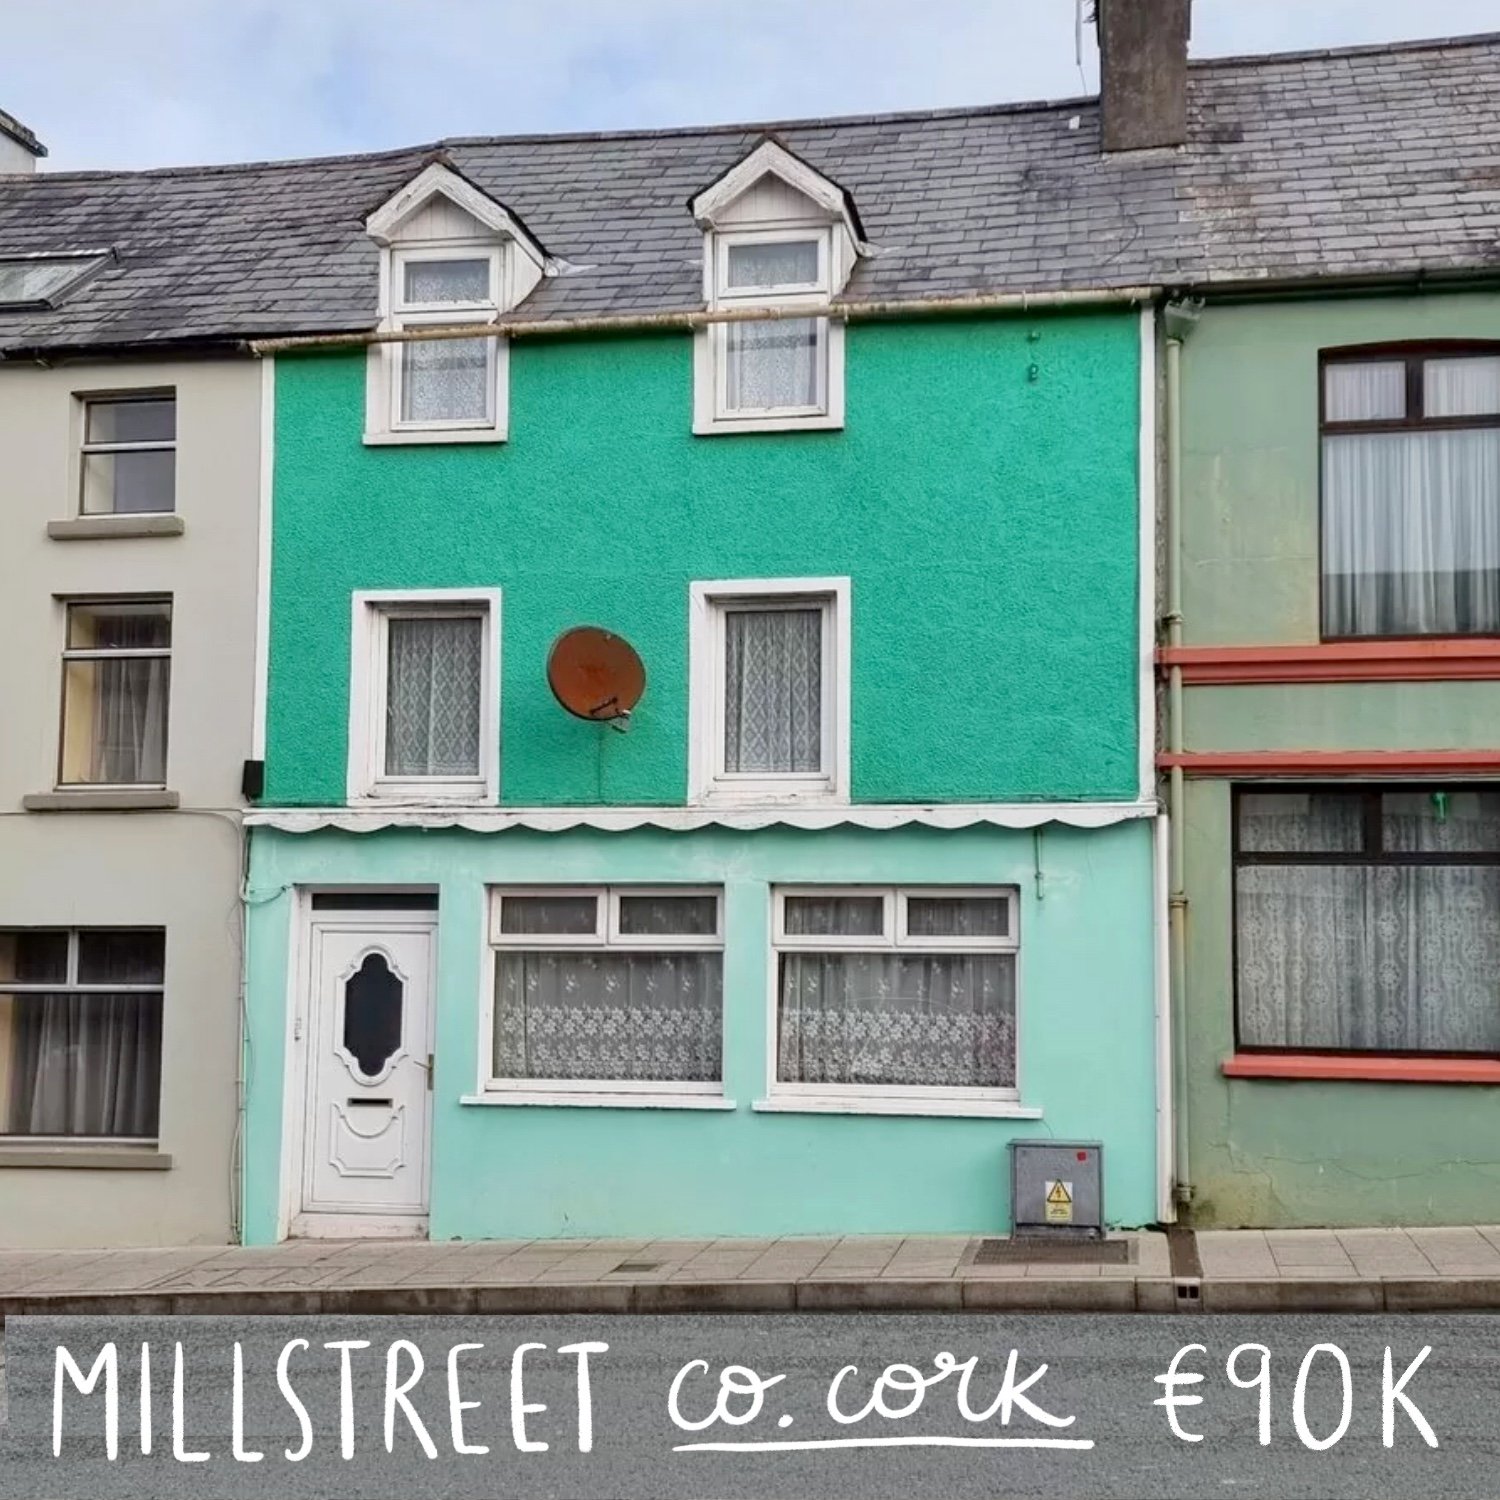 Millstreet, Co. Cork. €90k